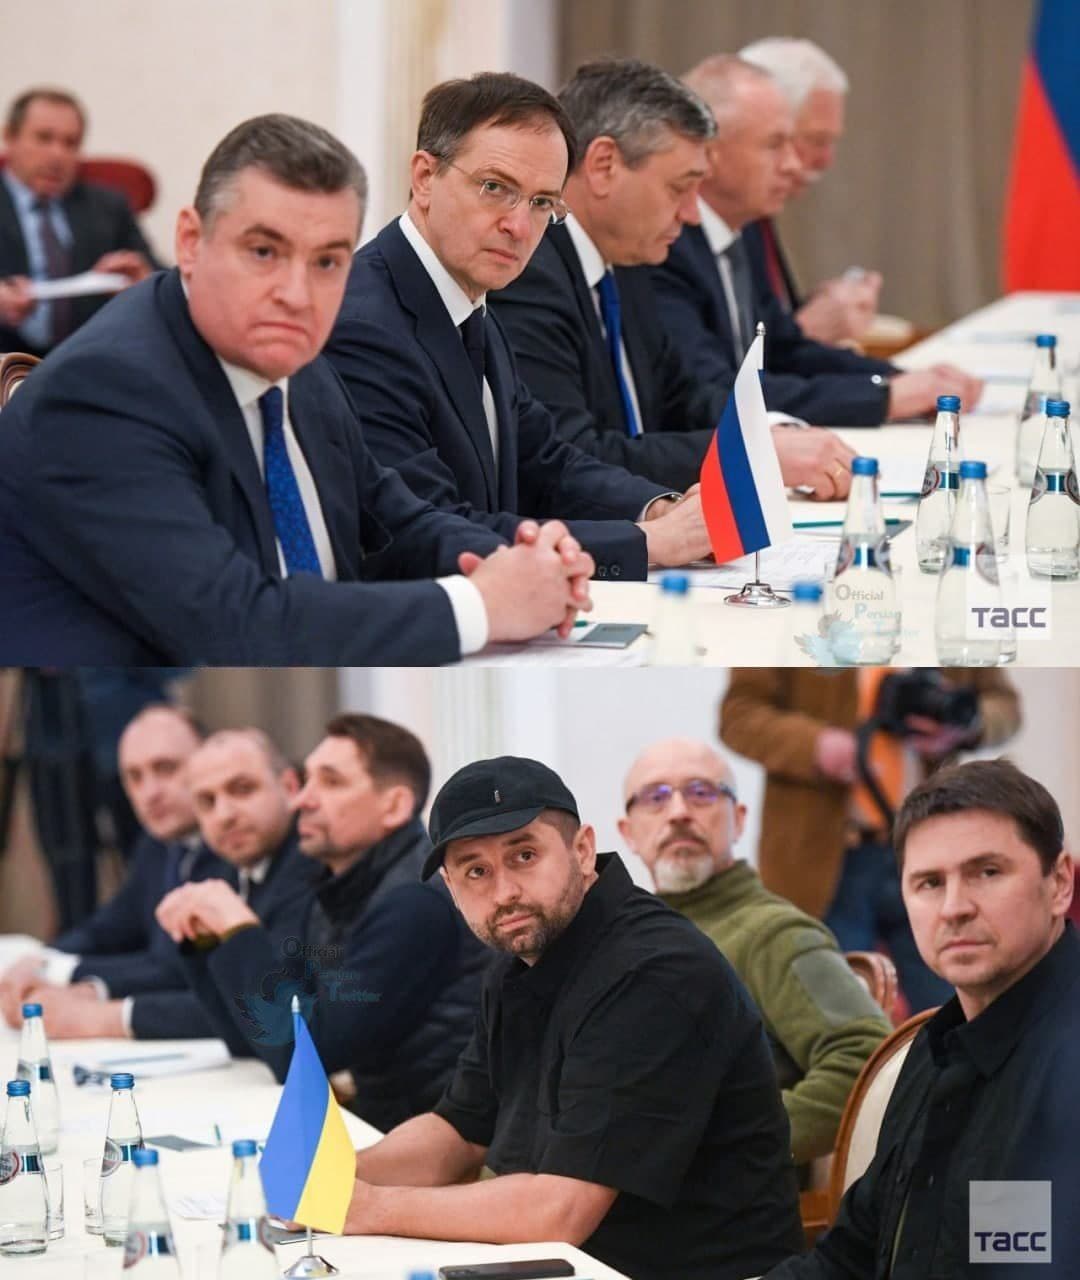 تفاوت ظاهر جالب هیئت مذاکره کننده روسی و اوکراینی +عکس